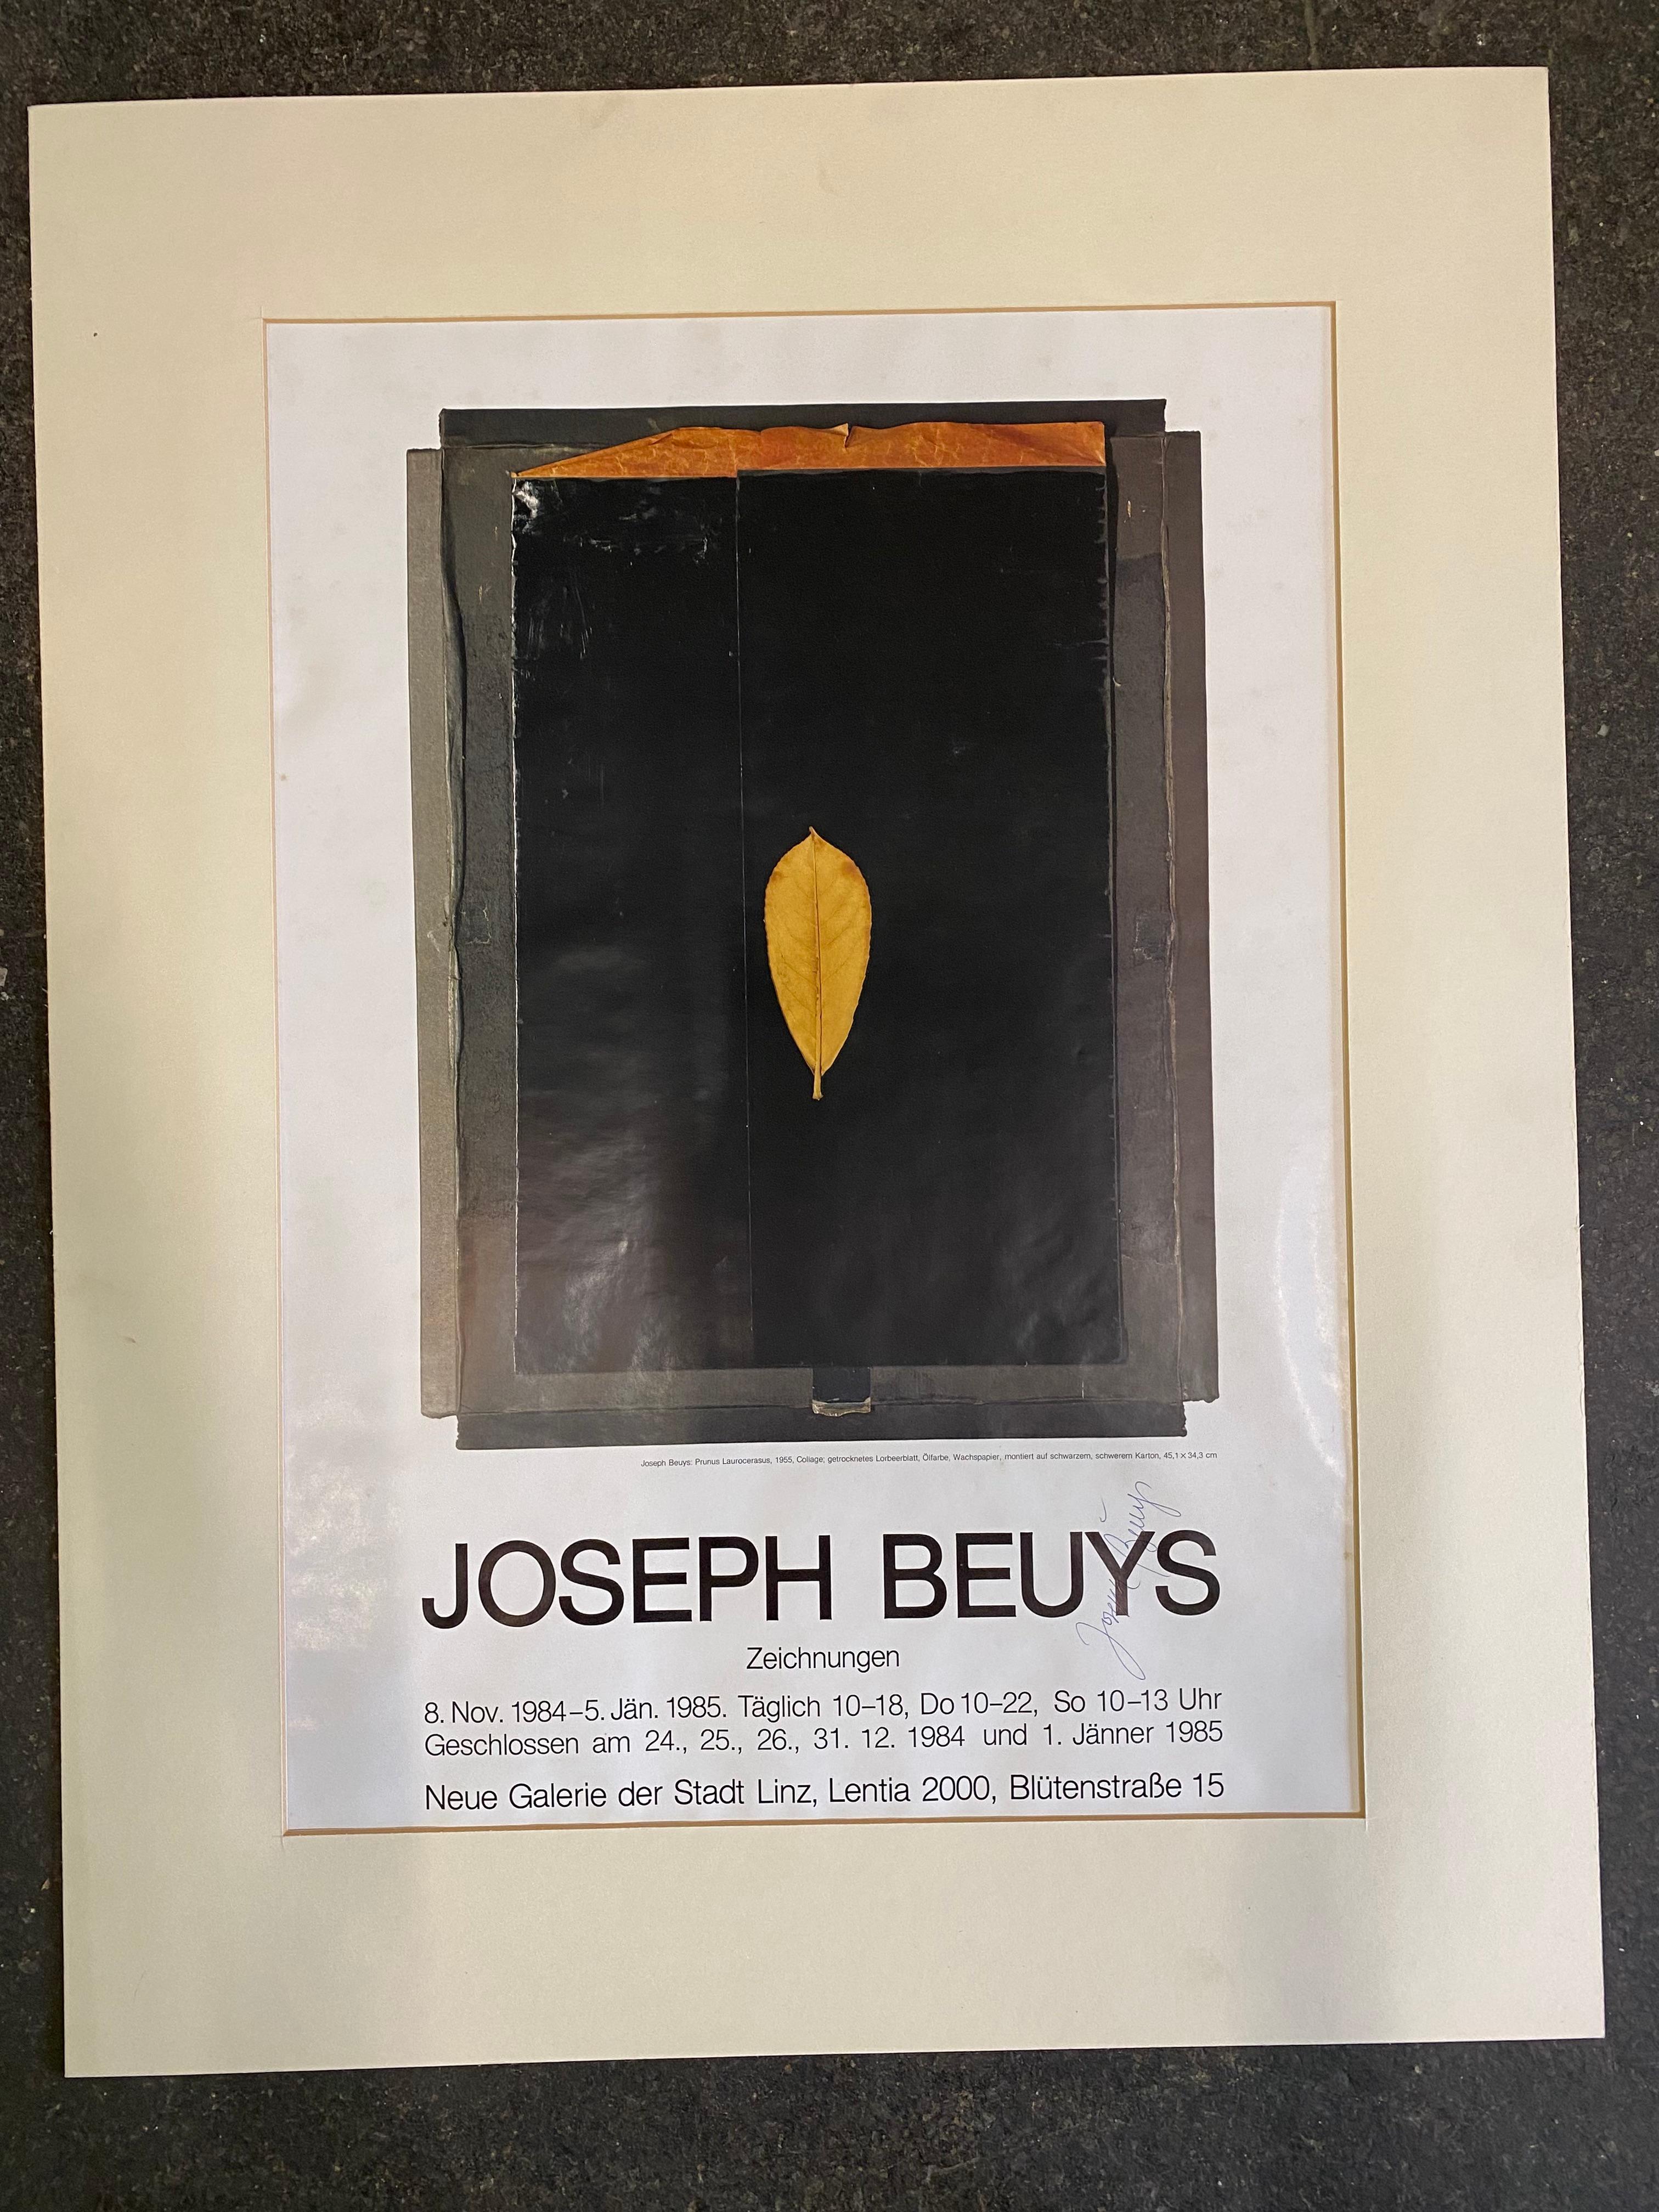 signiertes Ausstellungsplakat von Joseph Beuys: 